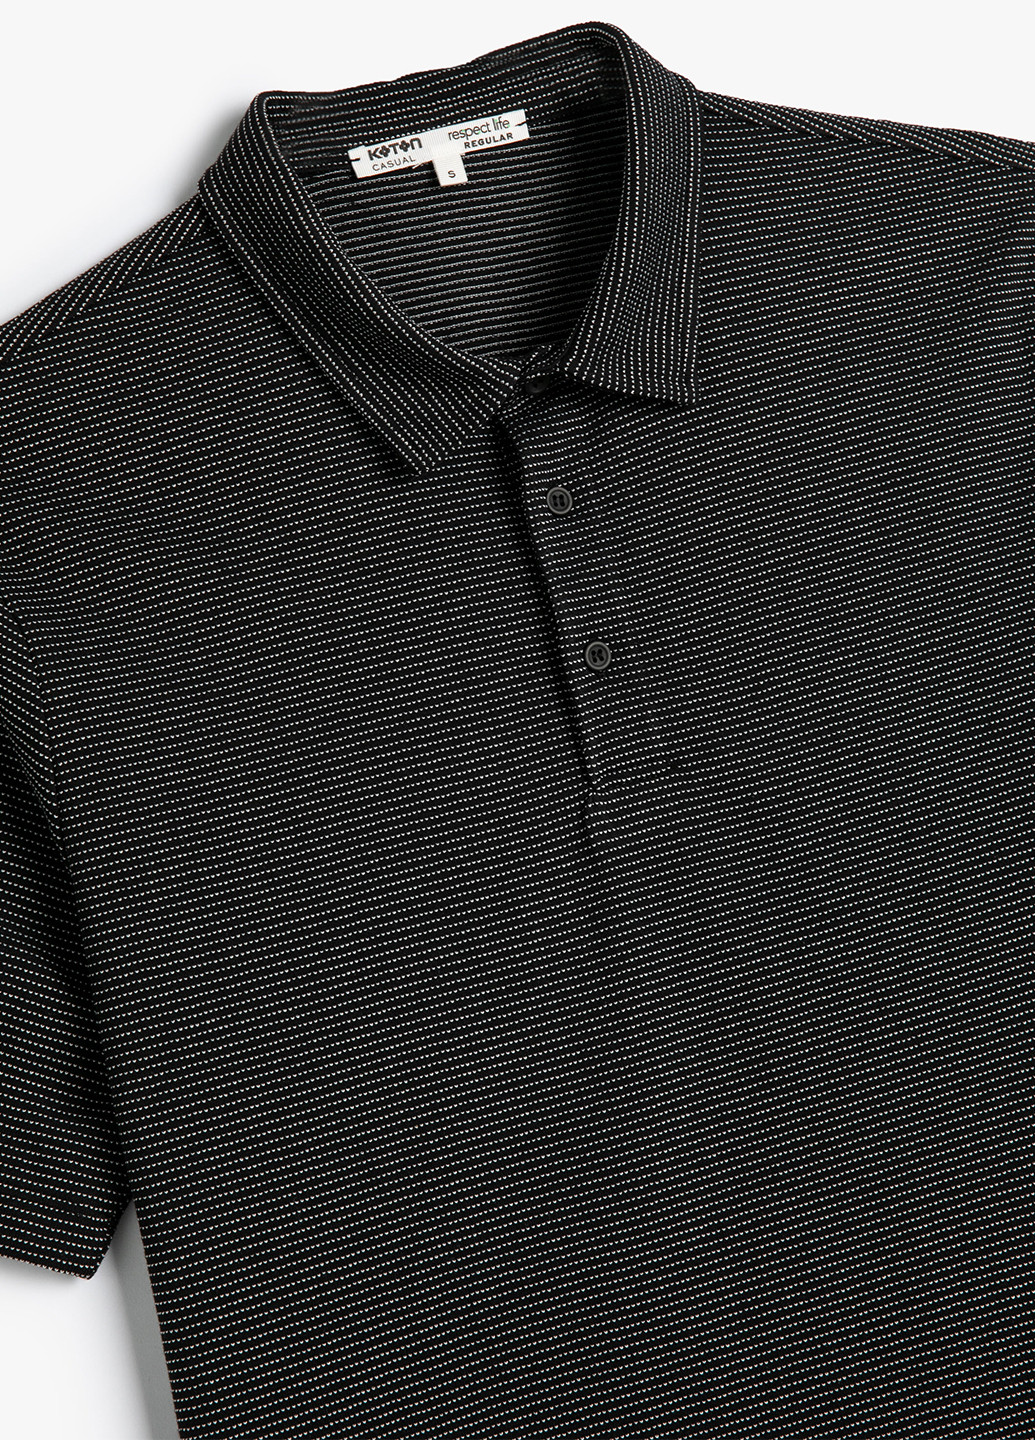 Черная футболка-поло для мужчин KOTON в полоску